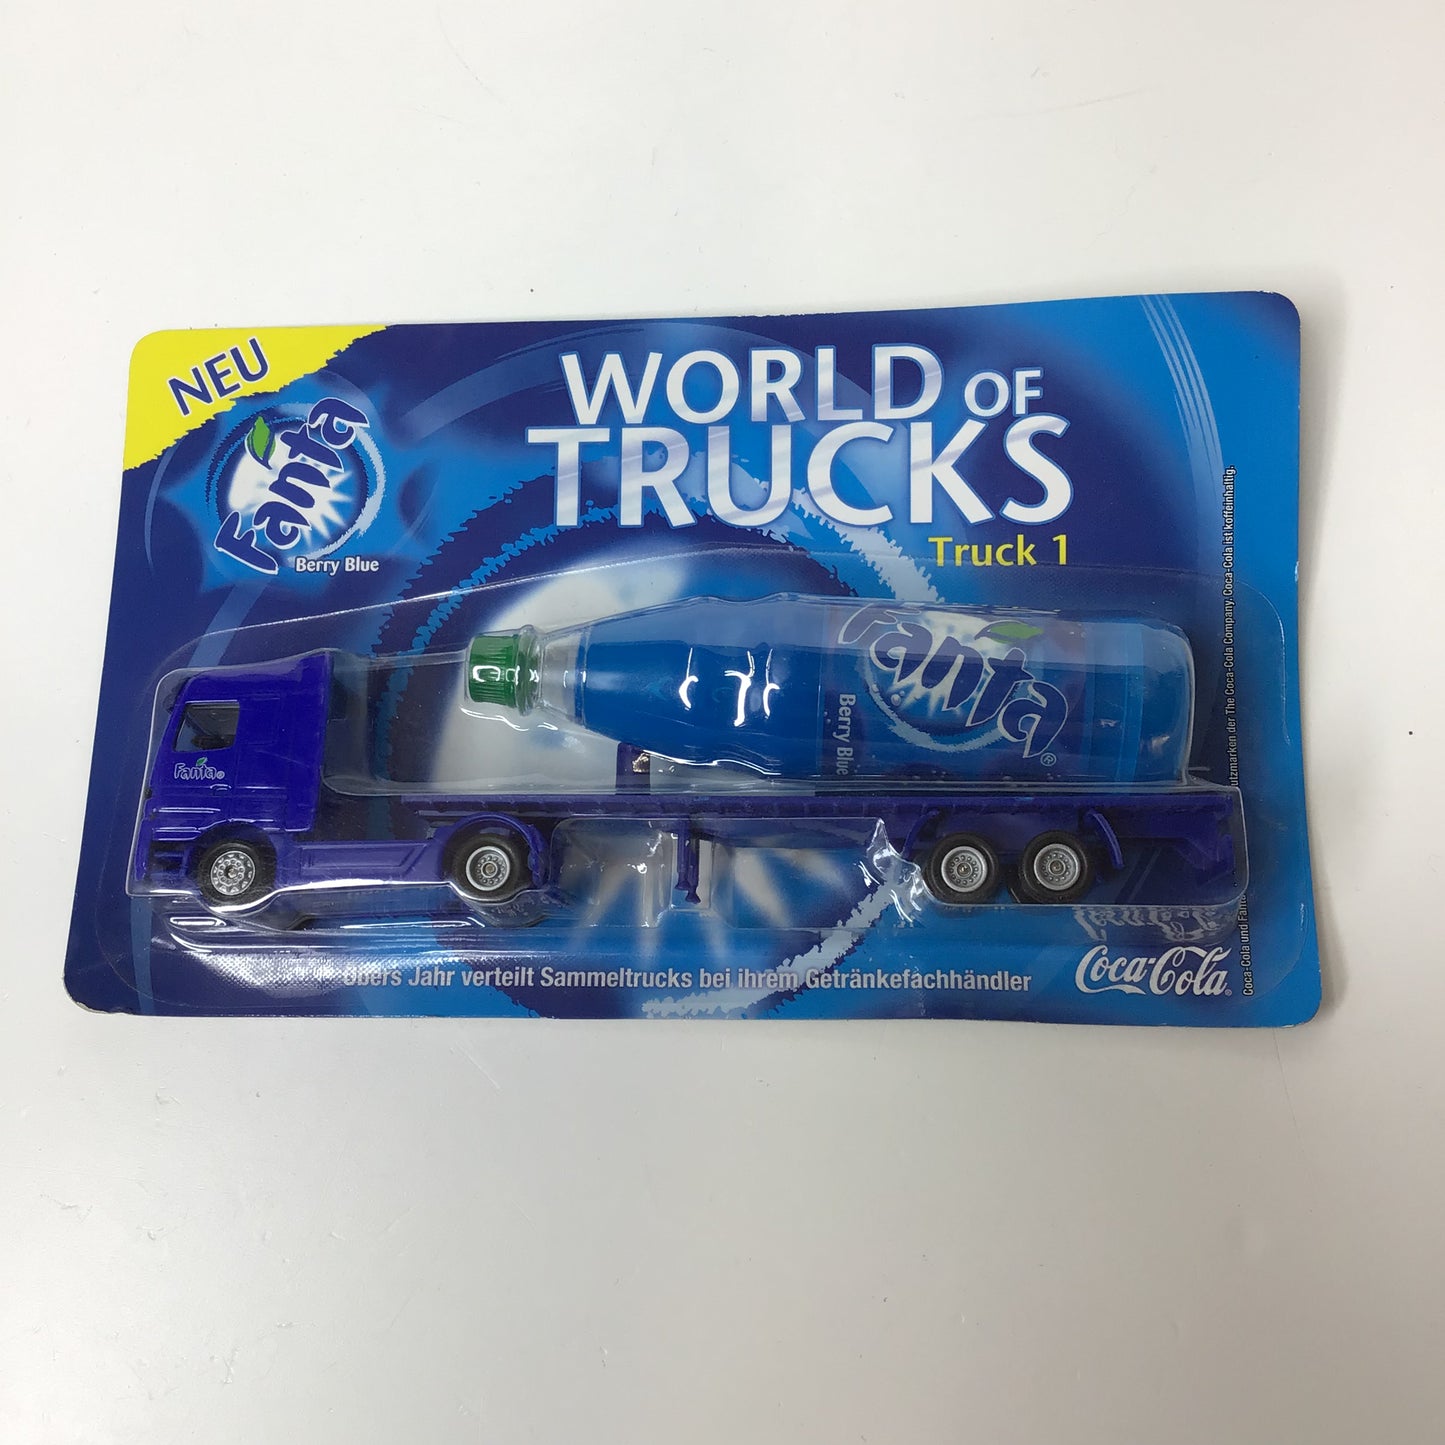 LKW Sammeltruck Fanta World of Trucks